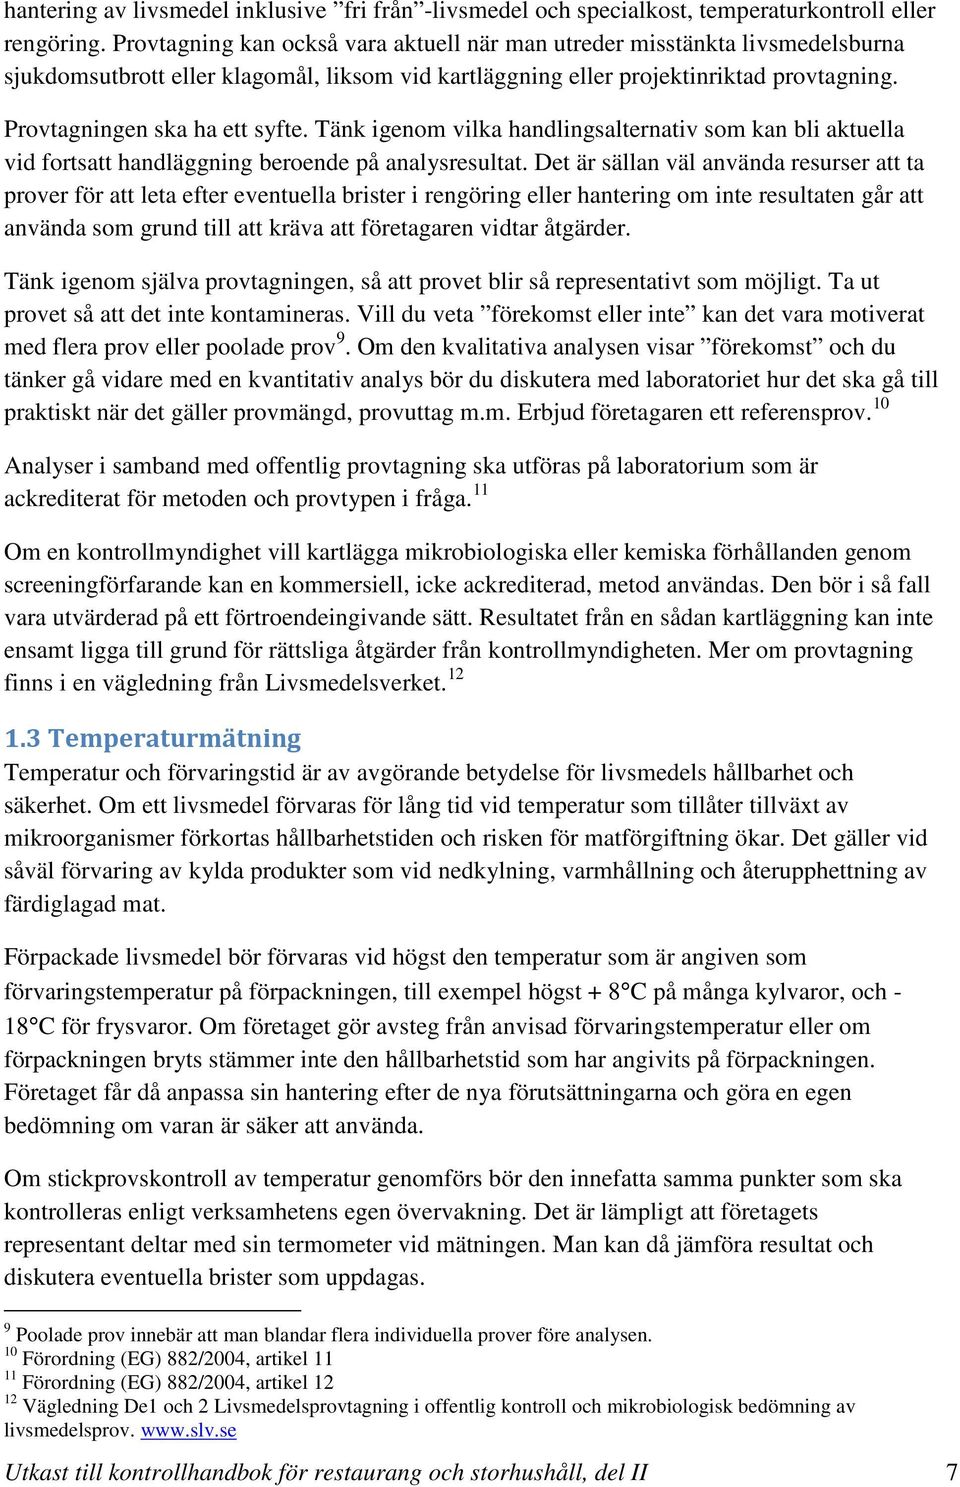 Kontrollhandbok storhushåll och restaurang Del II - PDF Gratis ...